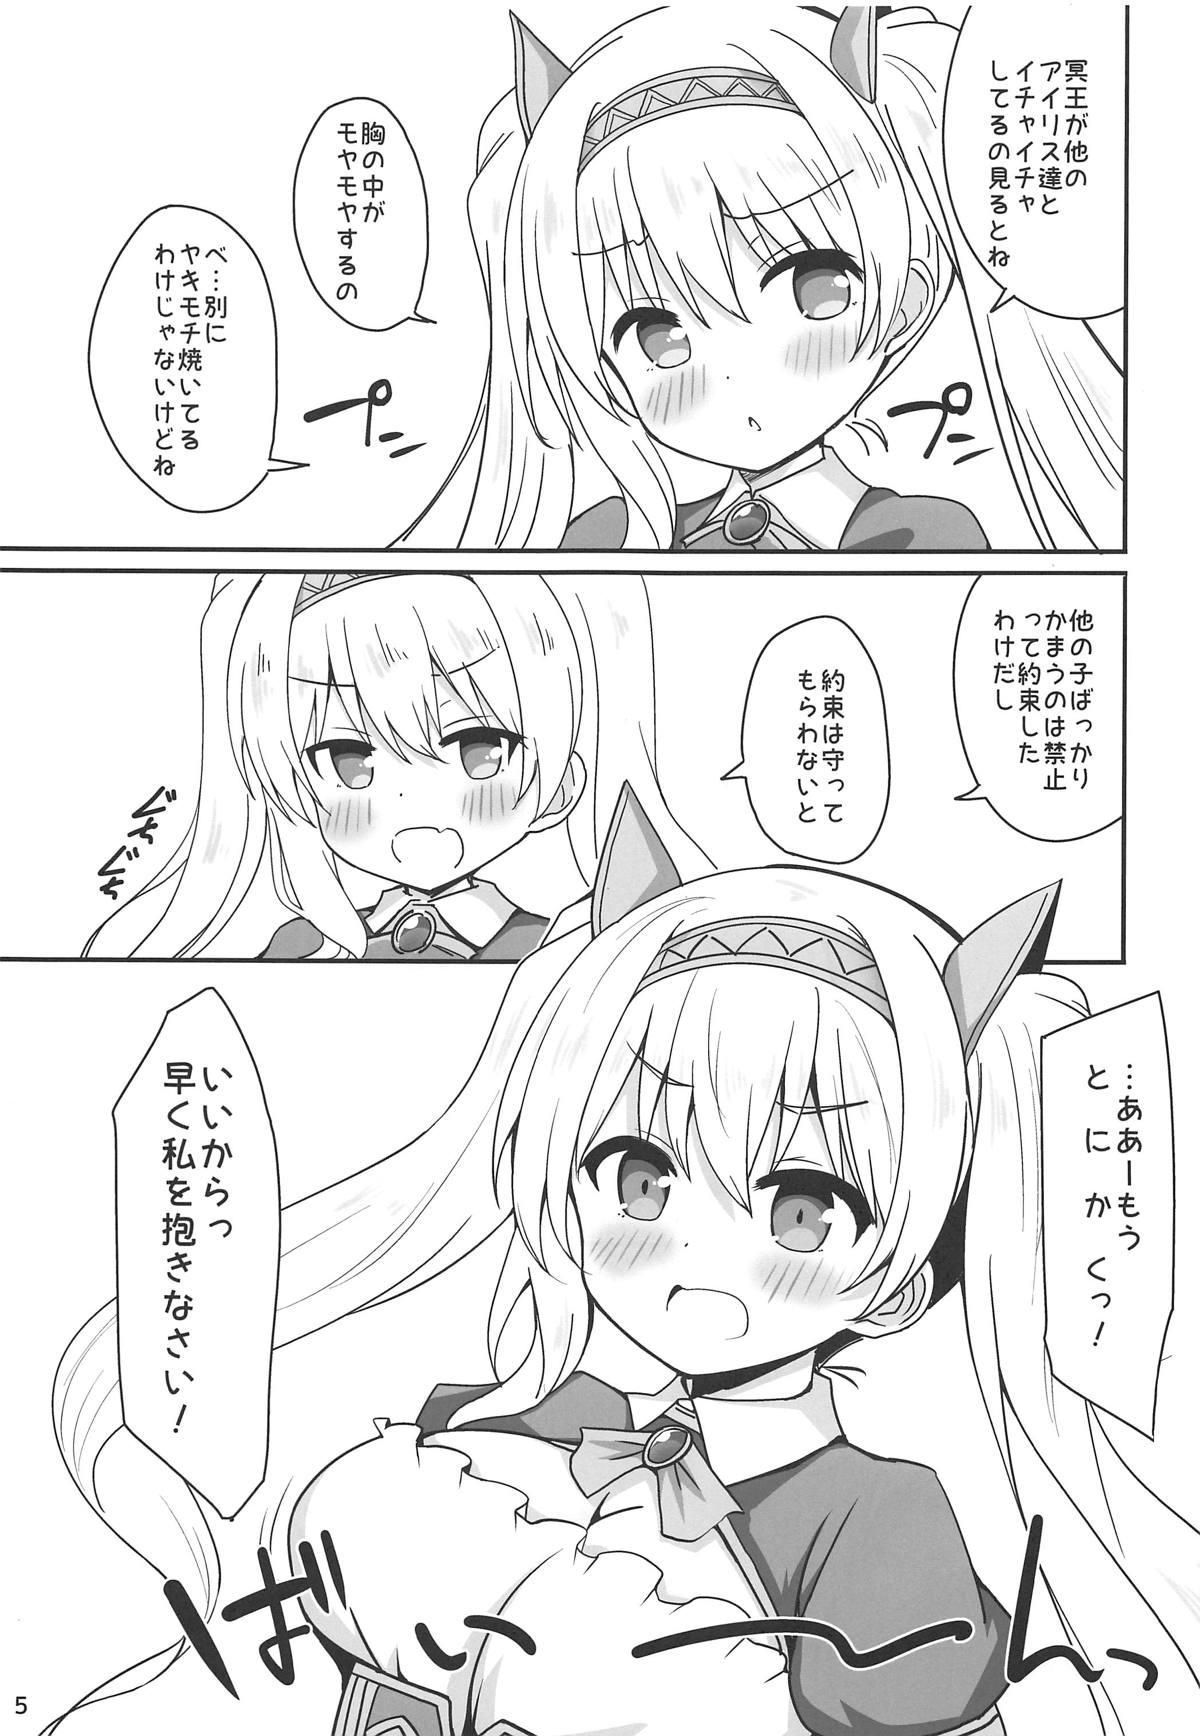 Adolescente Iris to Meiou-sama 4 - Original Facials - Page 4